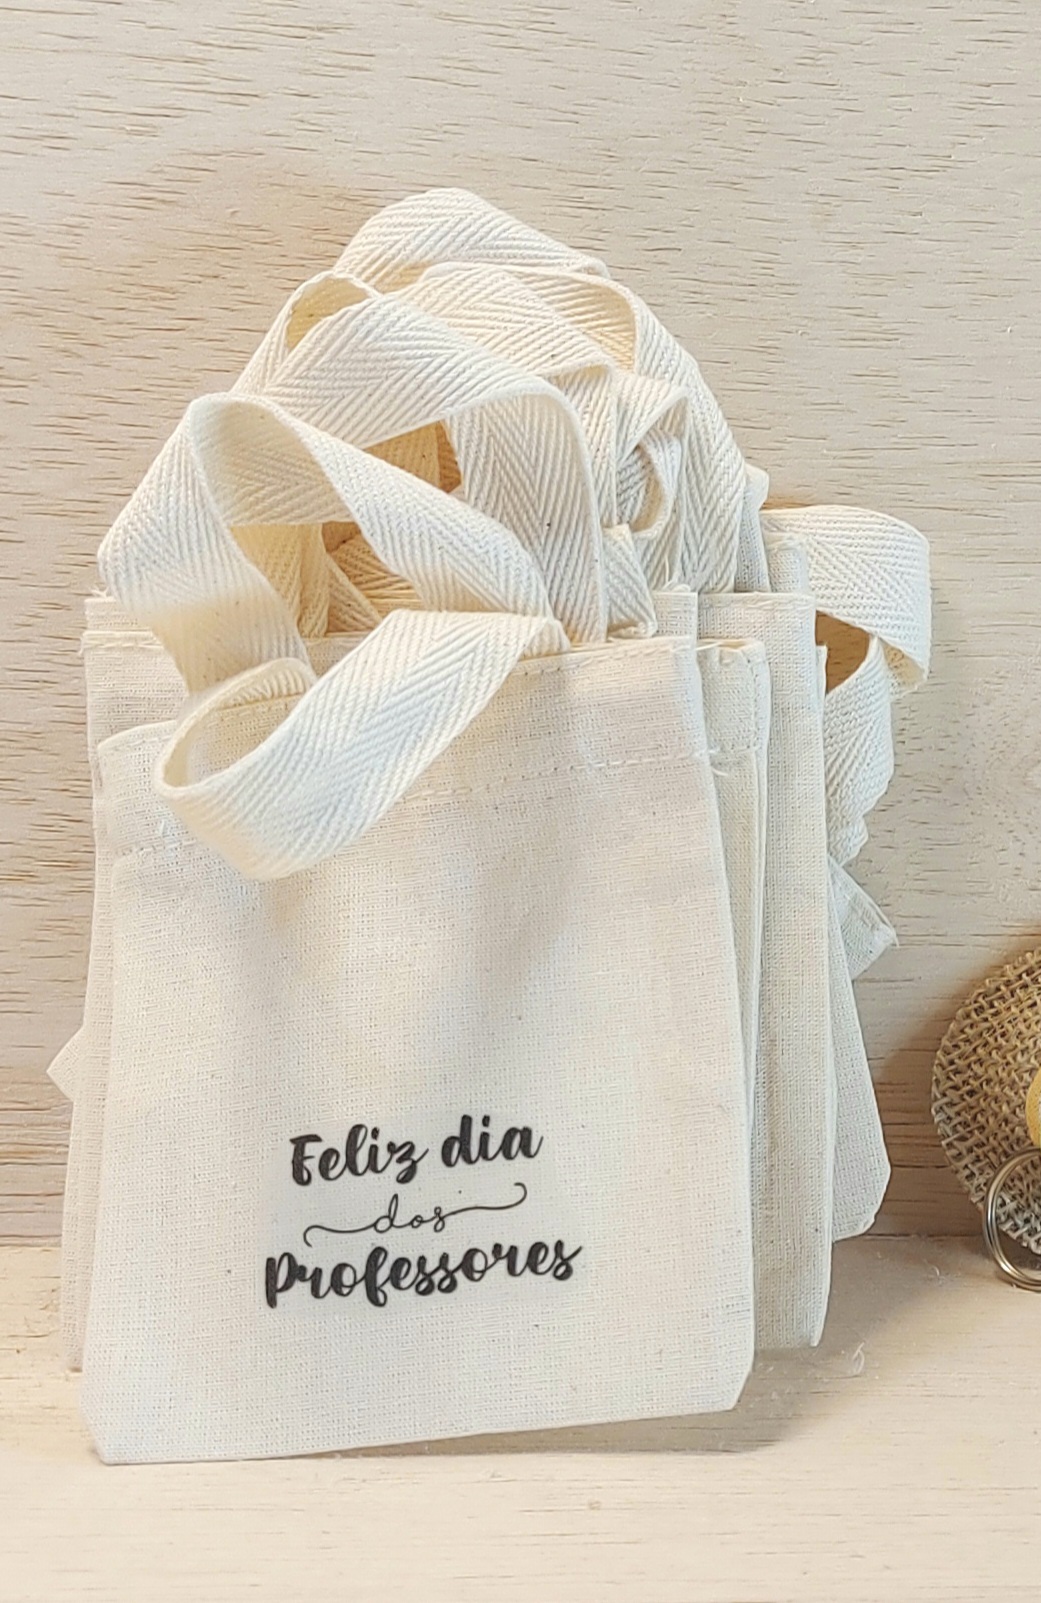 Sacolinha Minibag Feliz Dia dos Professores - Personalizada - Estampa Padrão - Algodão Cru - Lembrancinha Dia dos Professores